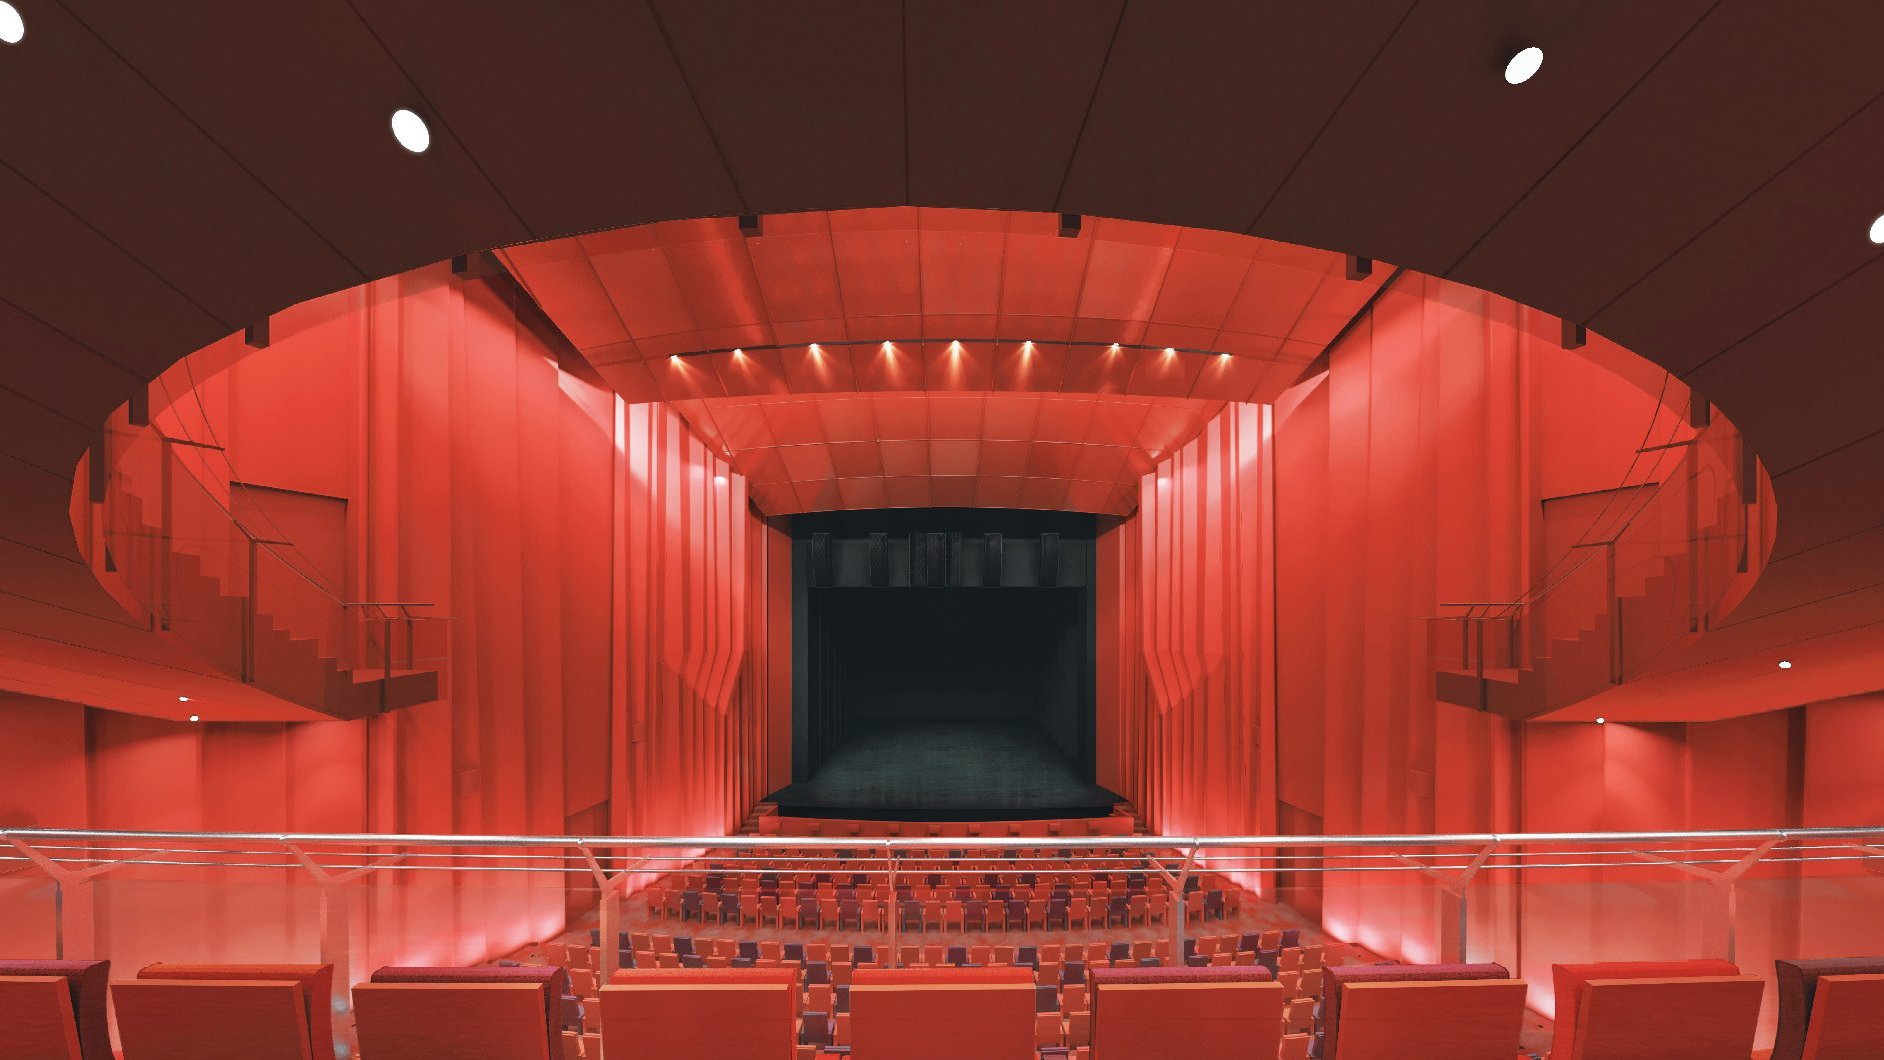 Wizualizacja sali głównej przyszłego Teatru Muzycznego, część dla publiczności i scena utrzymana w kolorach czerwonych, widać scenę, miejsca parterowe i balkon dla publiczności